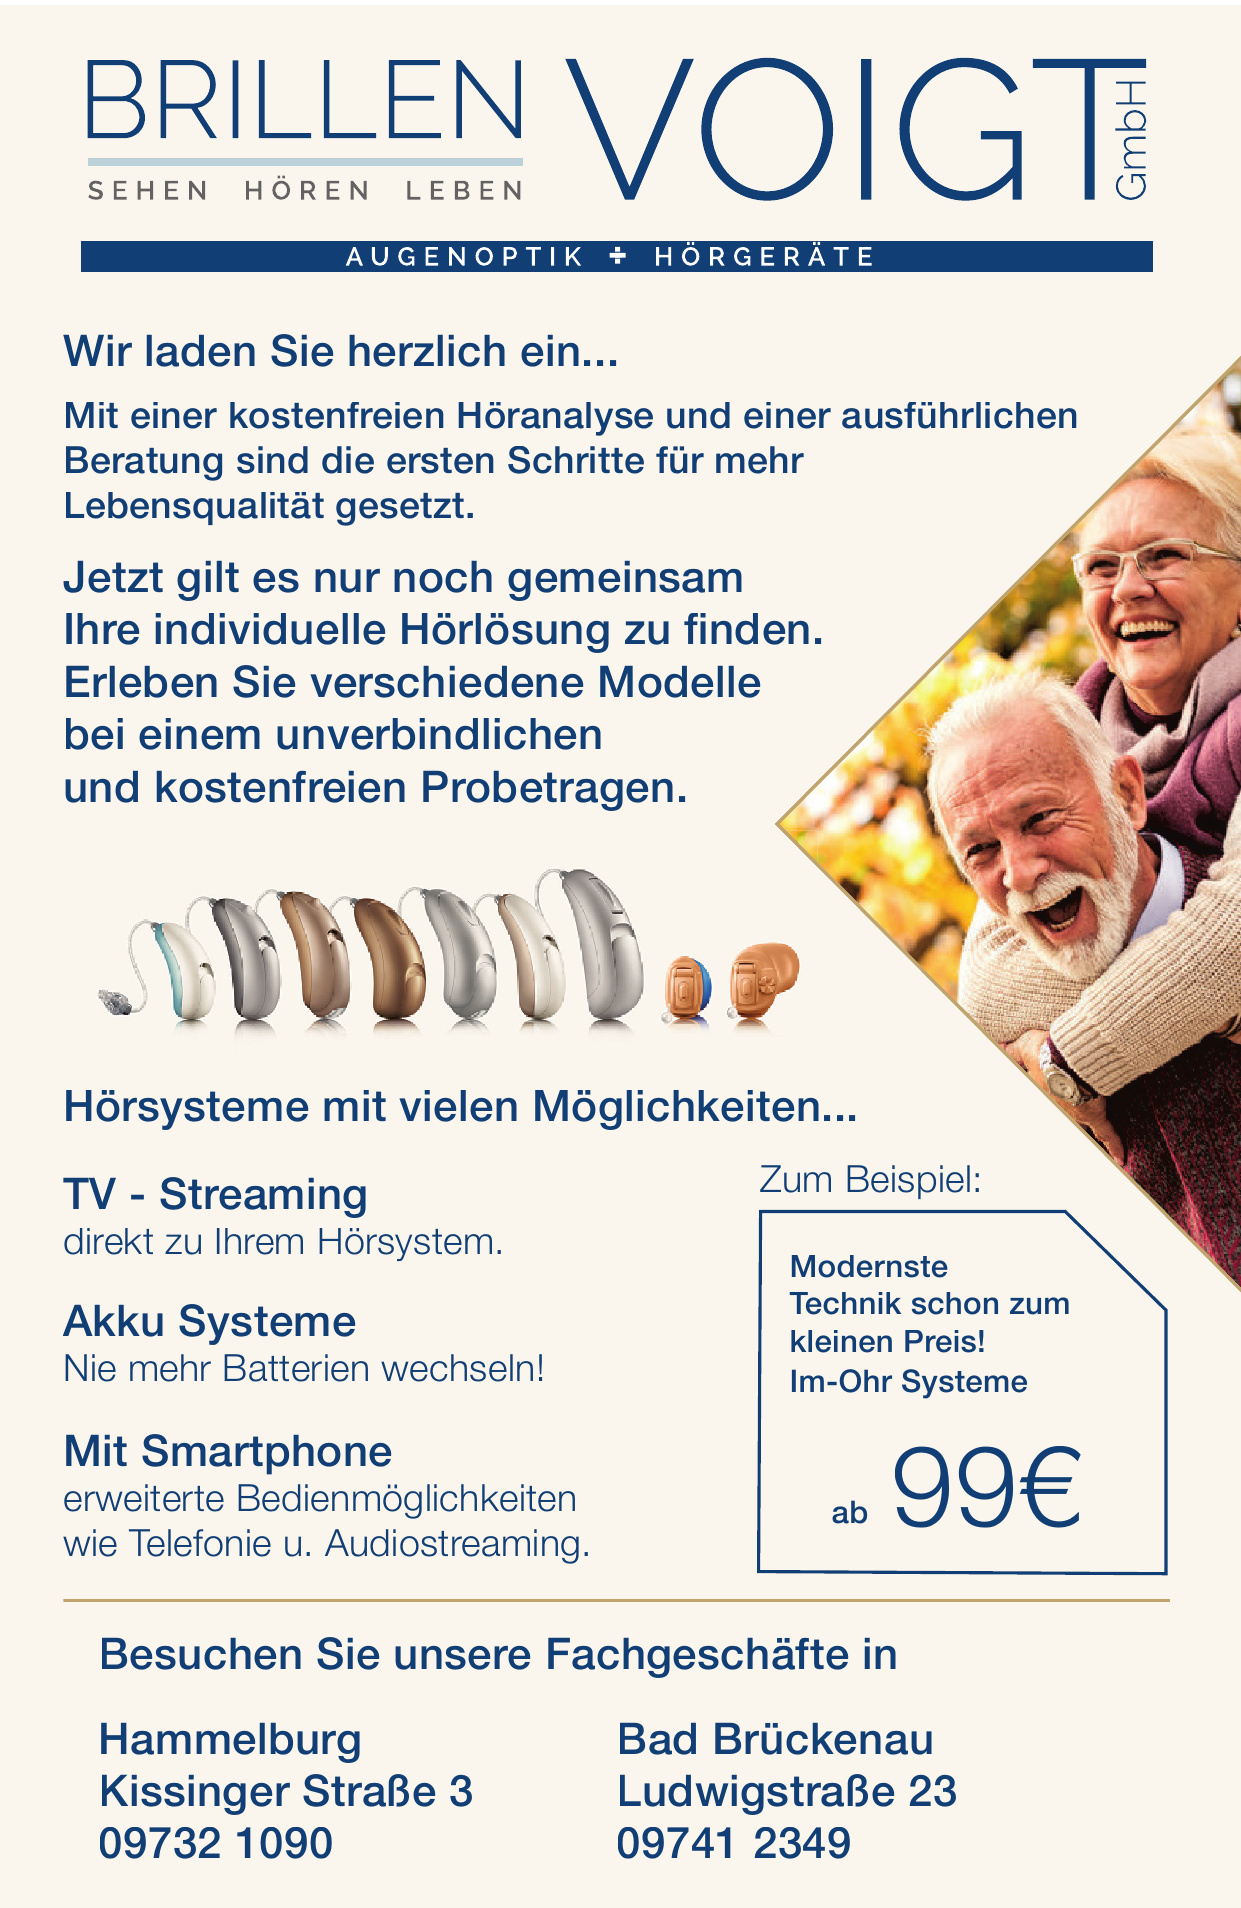 Brillen Voigt GmbH